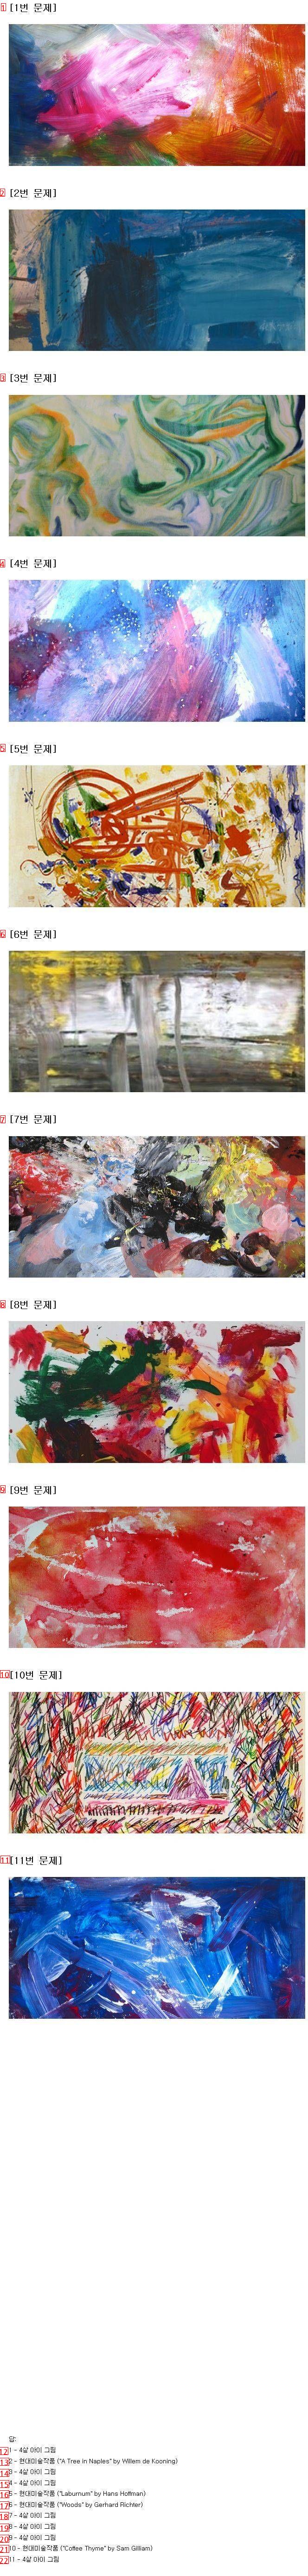 현대 미술 작품 vs 아이작품